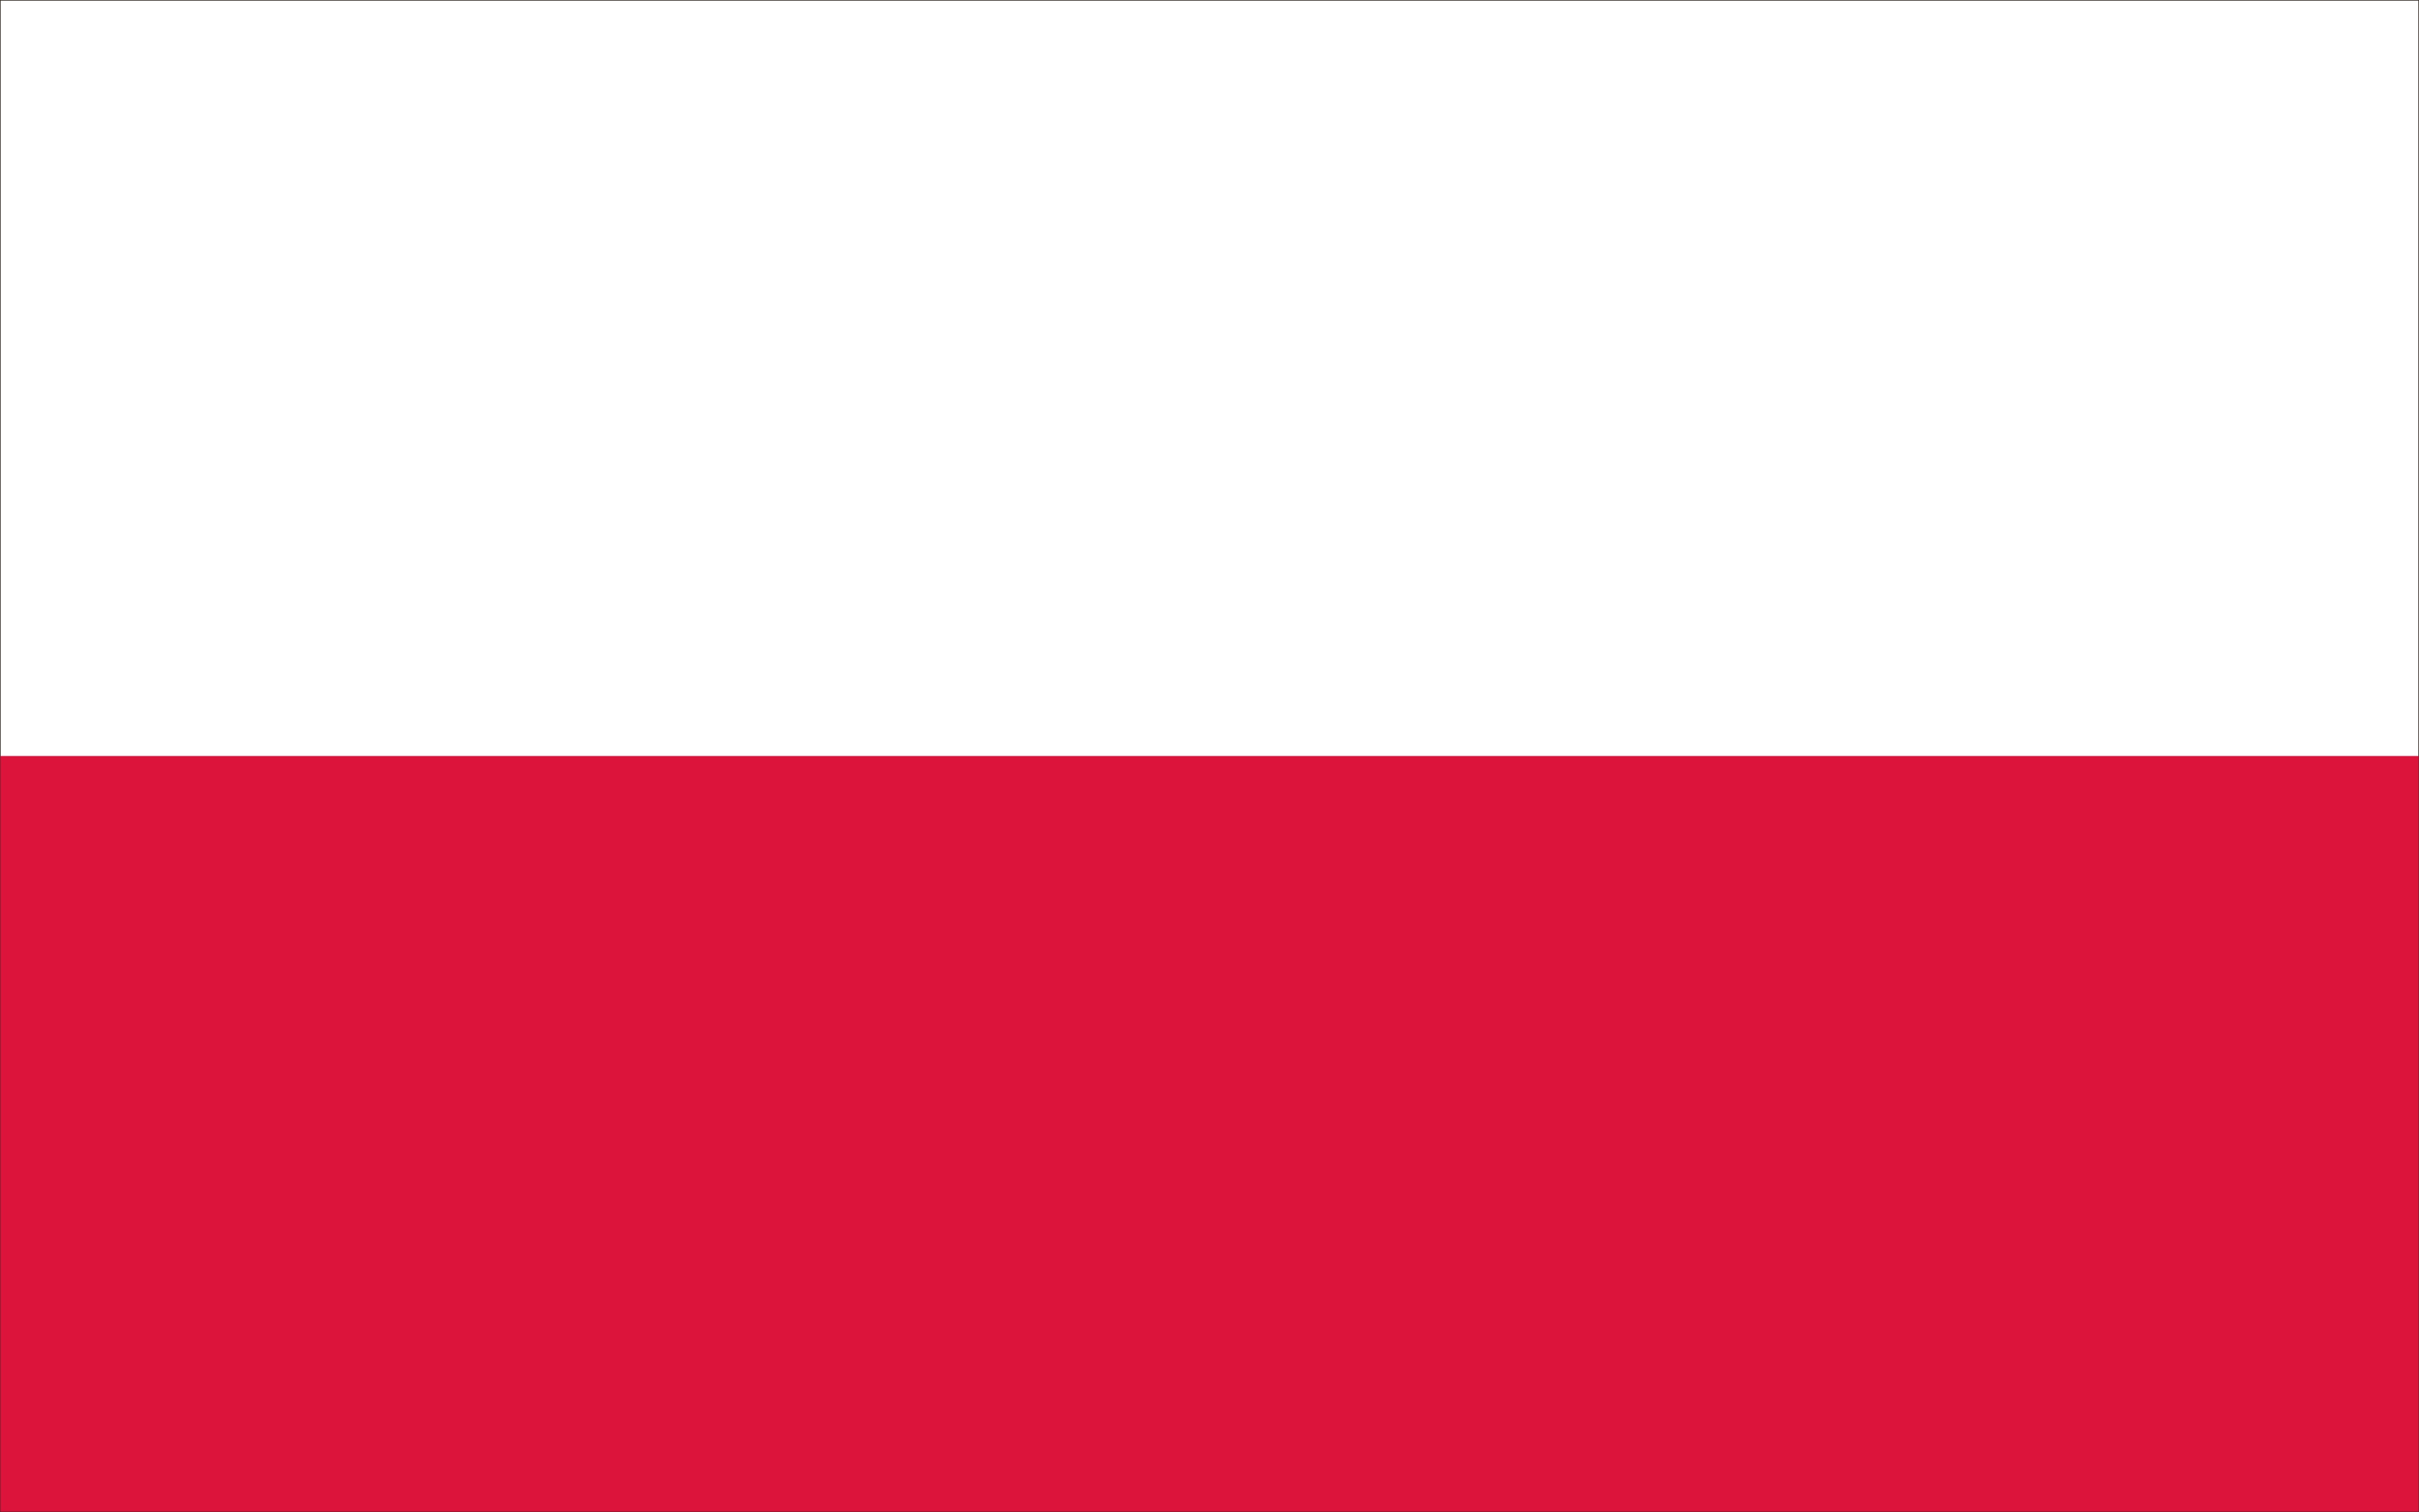 NATIONAL FLAG OF POLAND | The Flagman